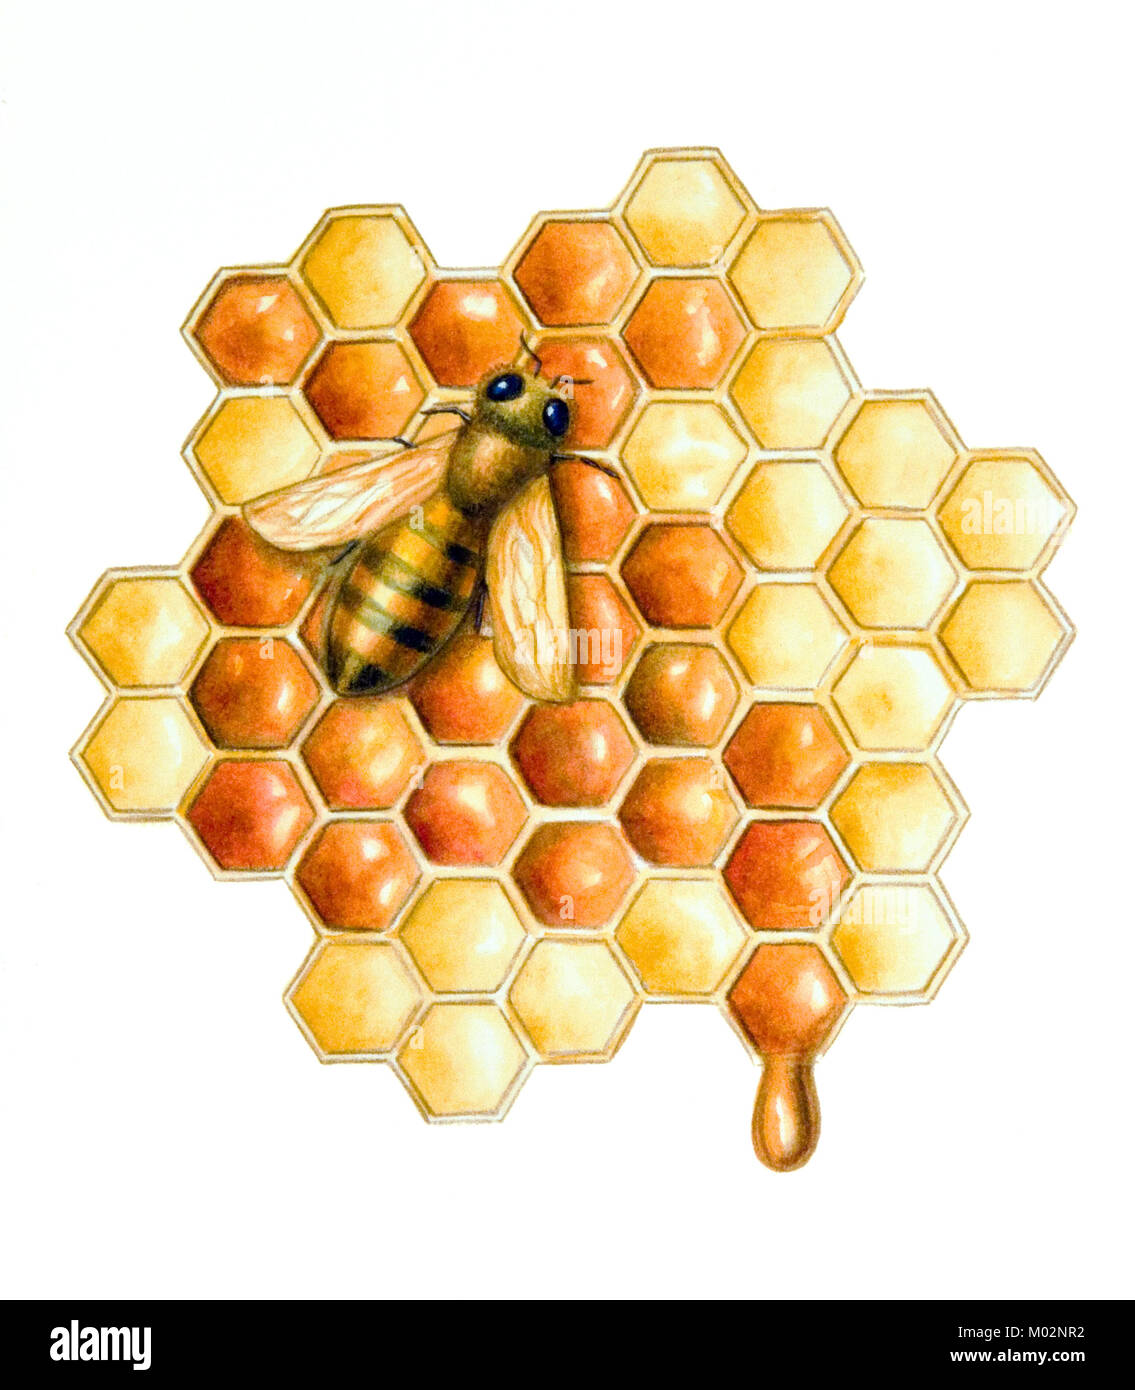 Eine Biene Fullen Der Hive Zellen Mit Frischem Honig Hand Gemalte Abbildung Stockfotografie Alamy